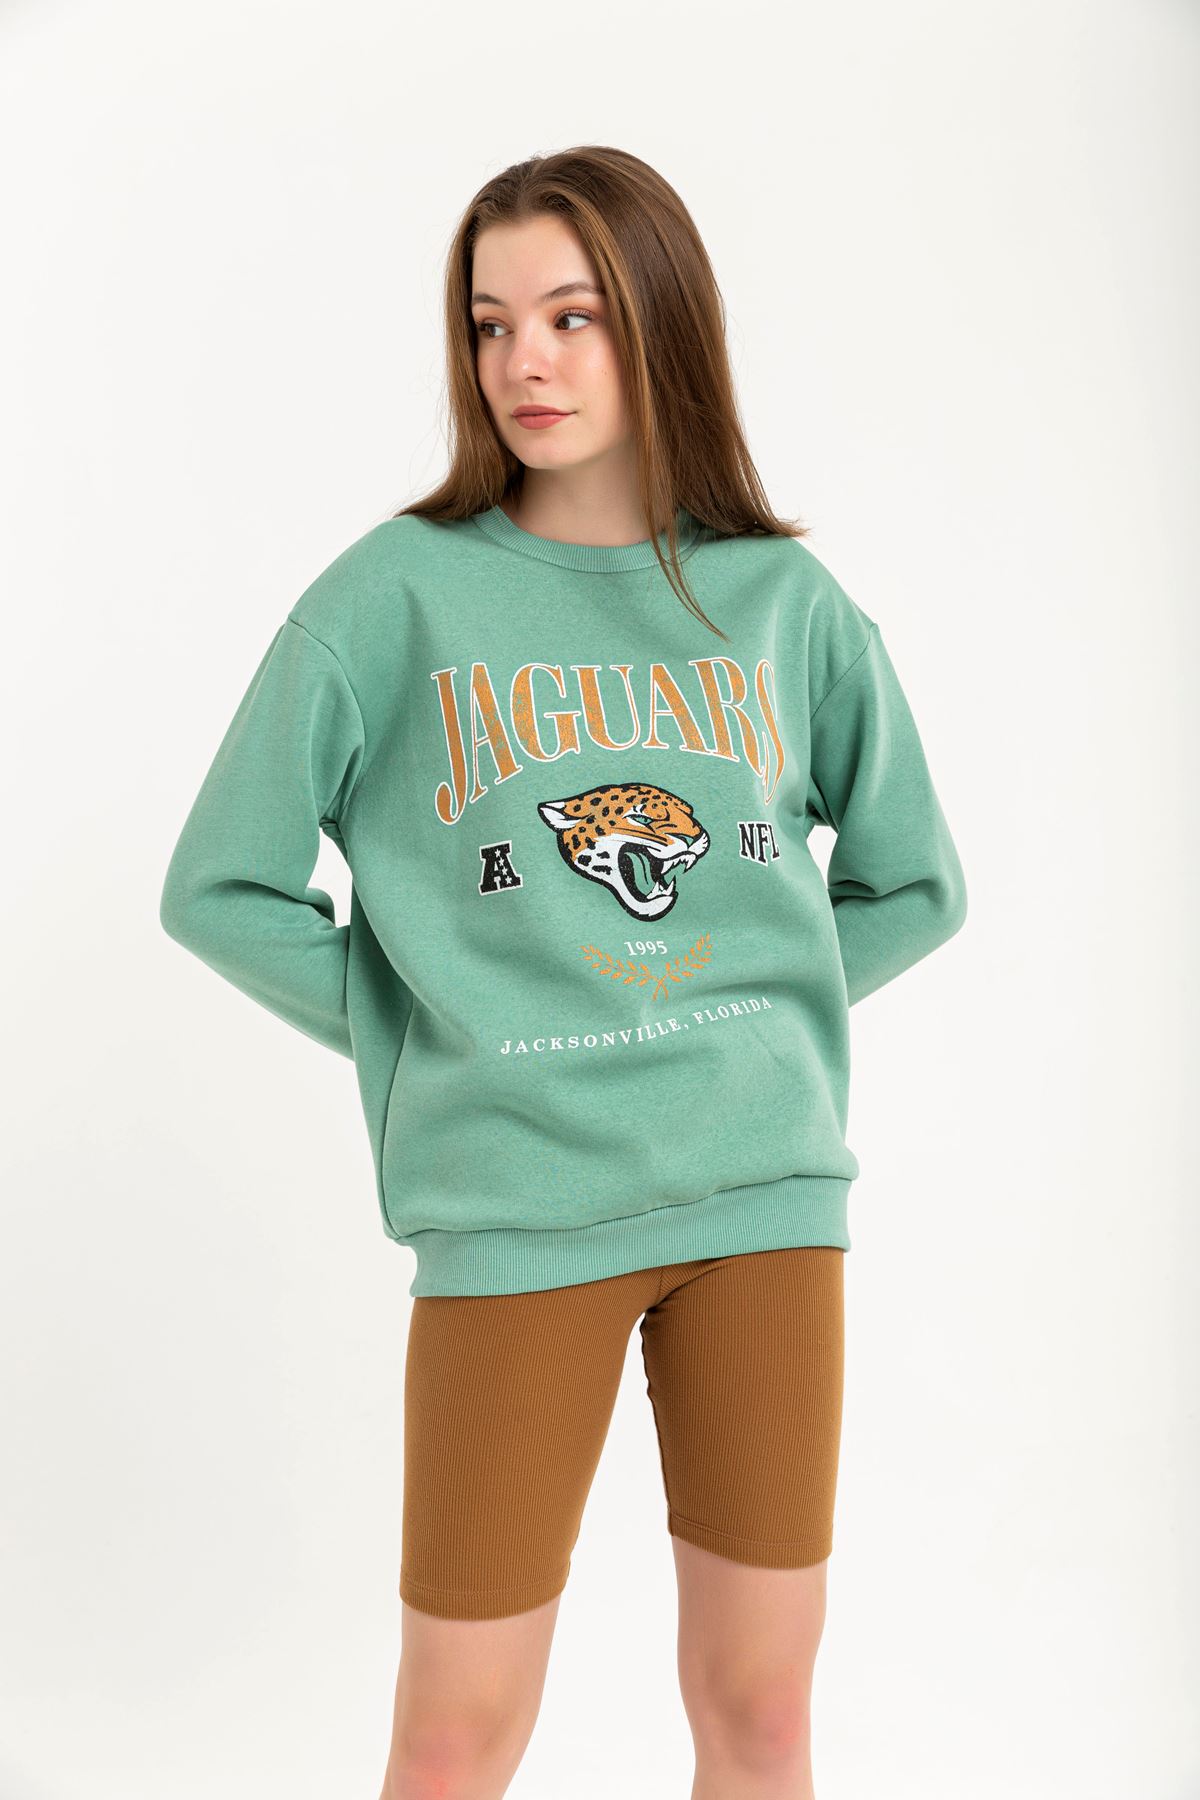 Şardonlu 3 İplik Kumaş Rahat Kalıp Jaguars Baskılı Kadın Sweatshirt-Mint